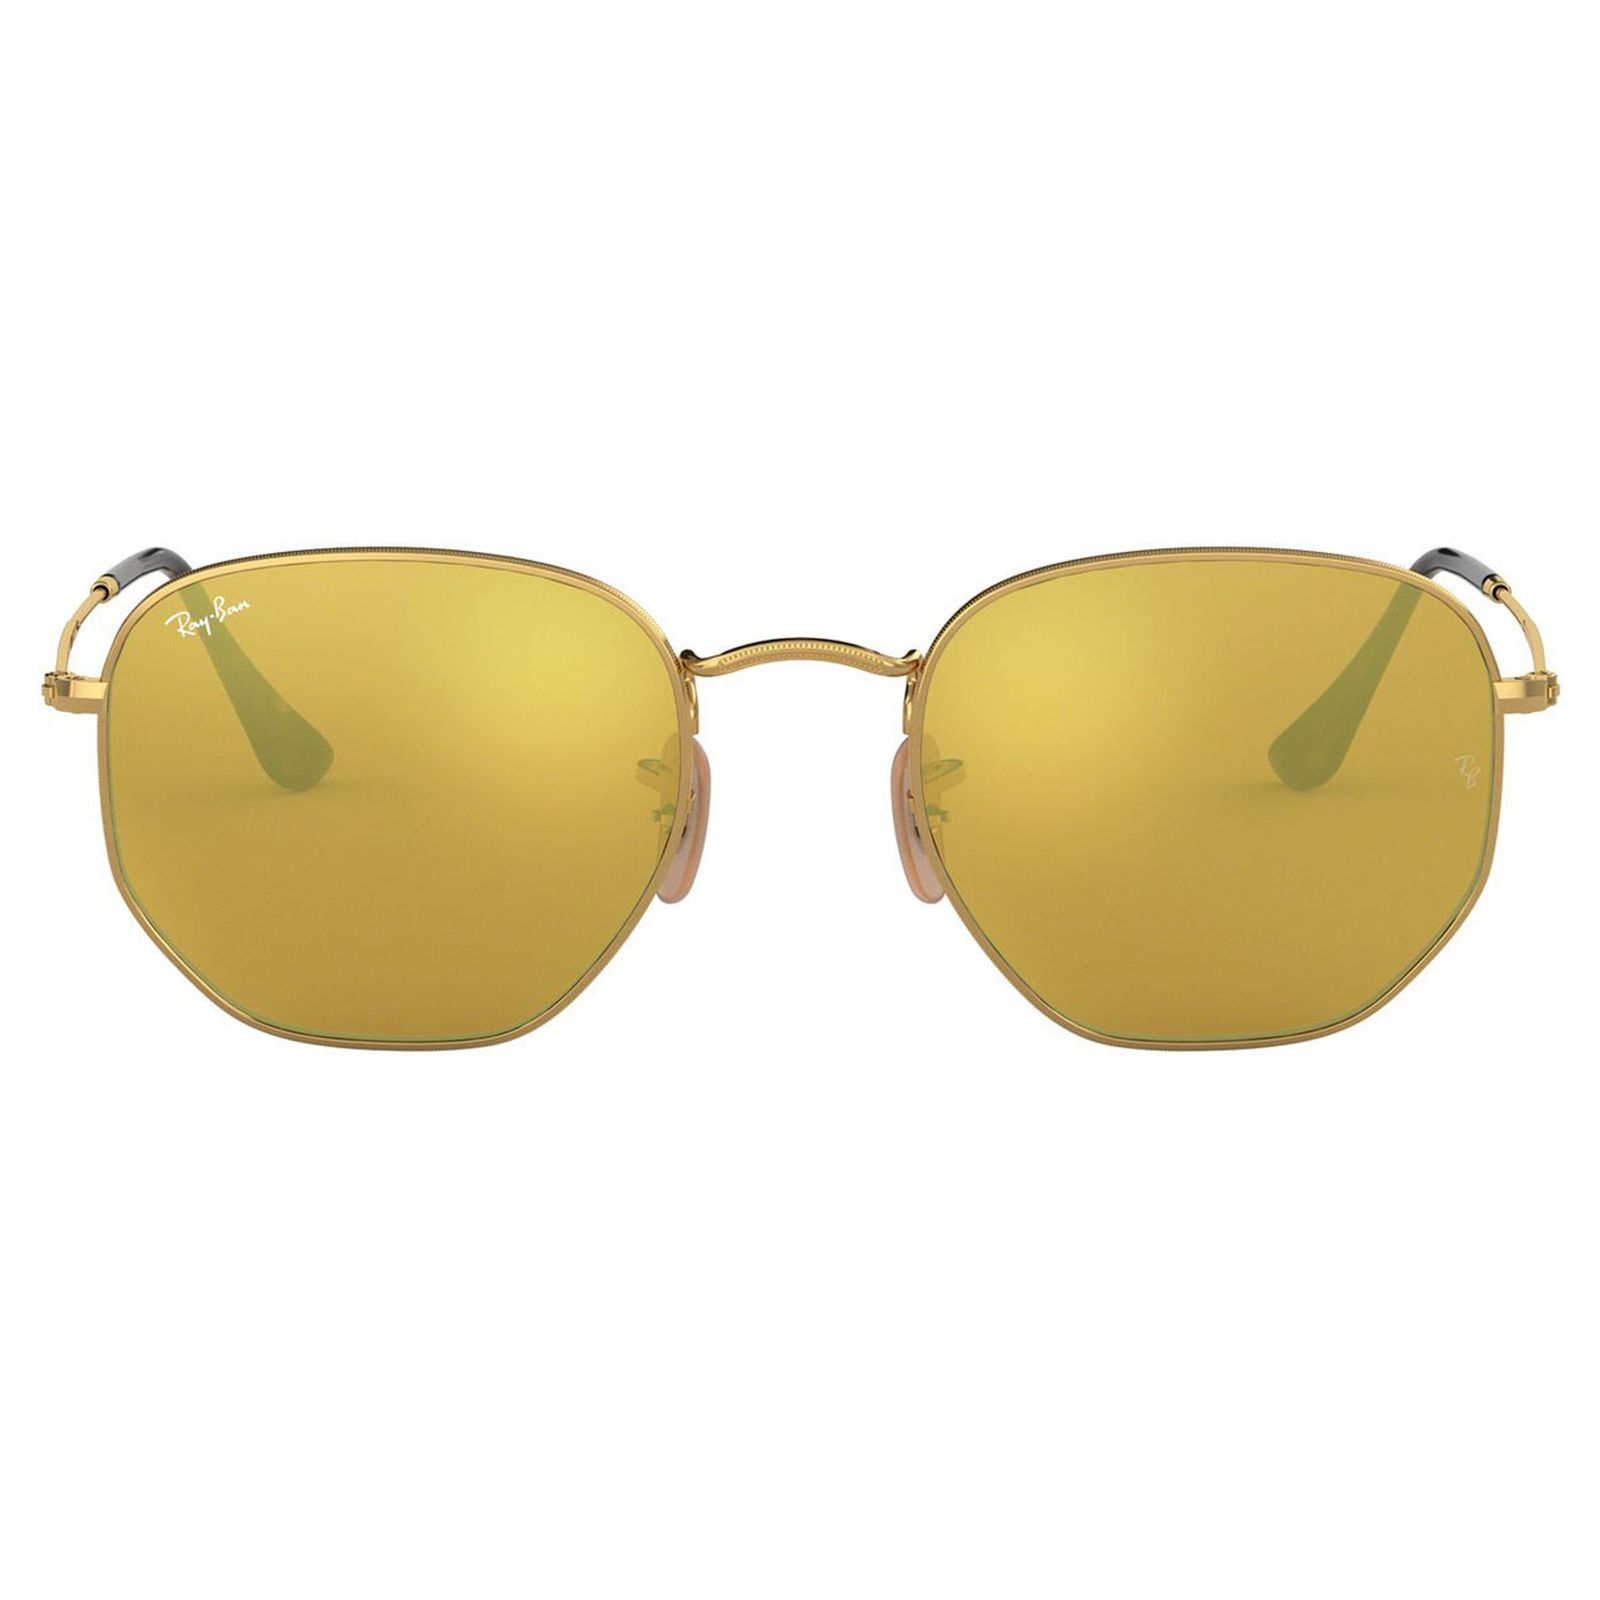 عینک آفتابی ری بن مدل 3548-001/93-54 - طلایی - 1